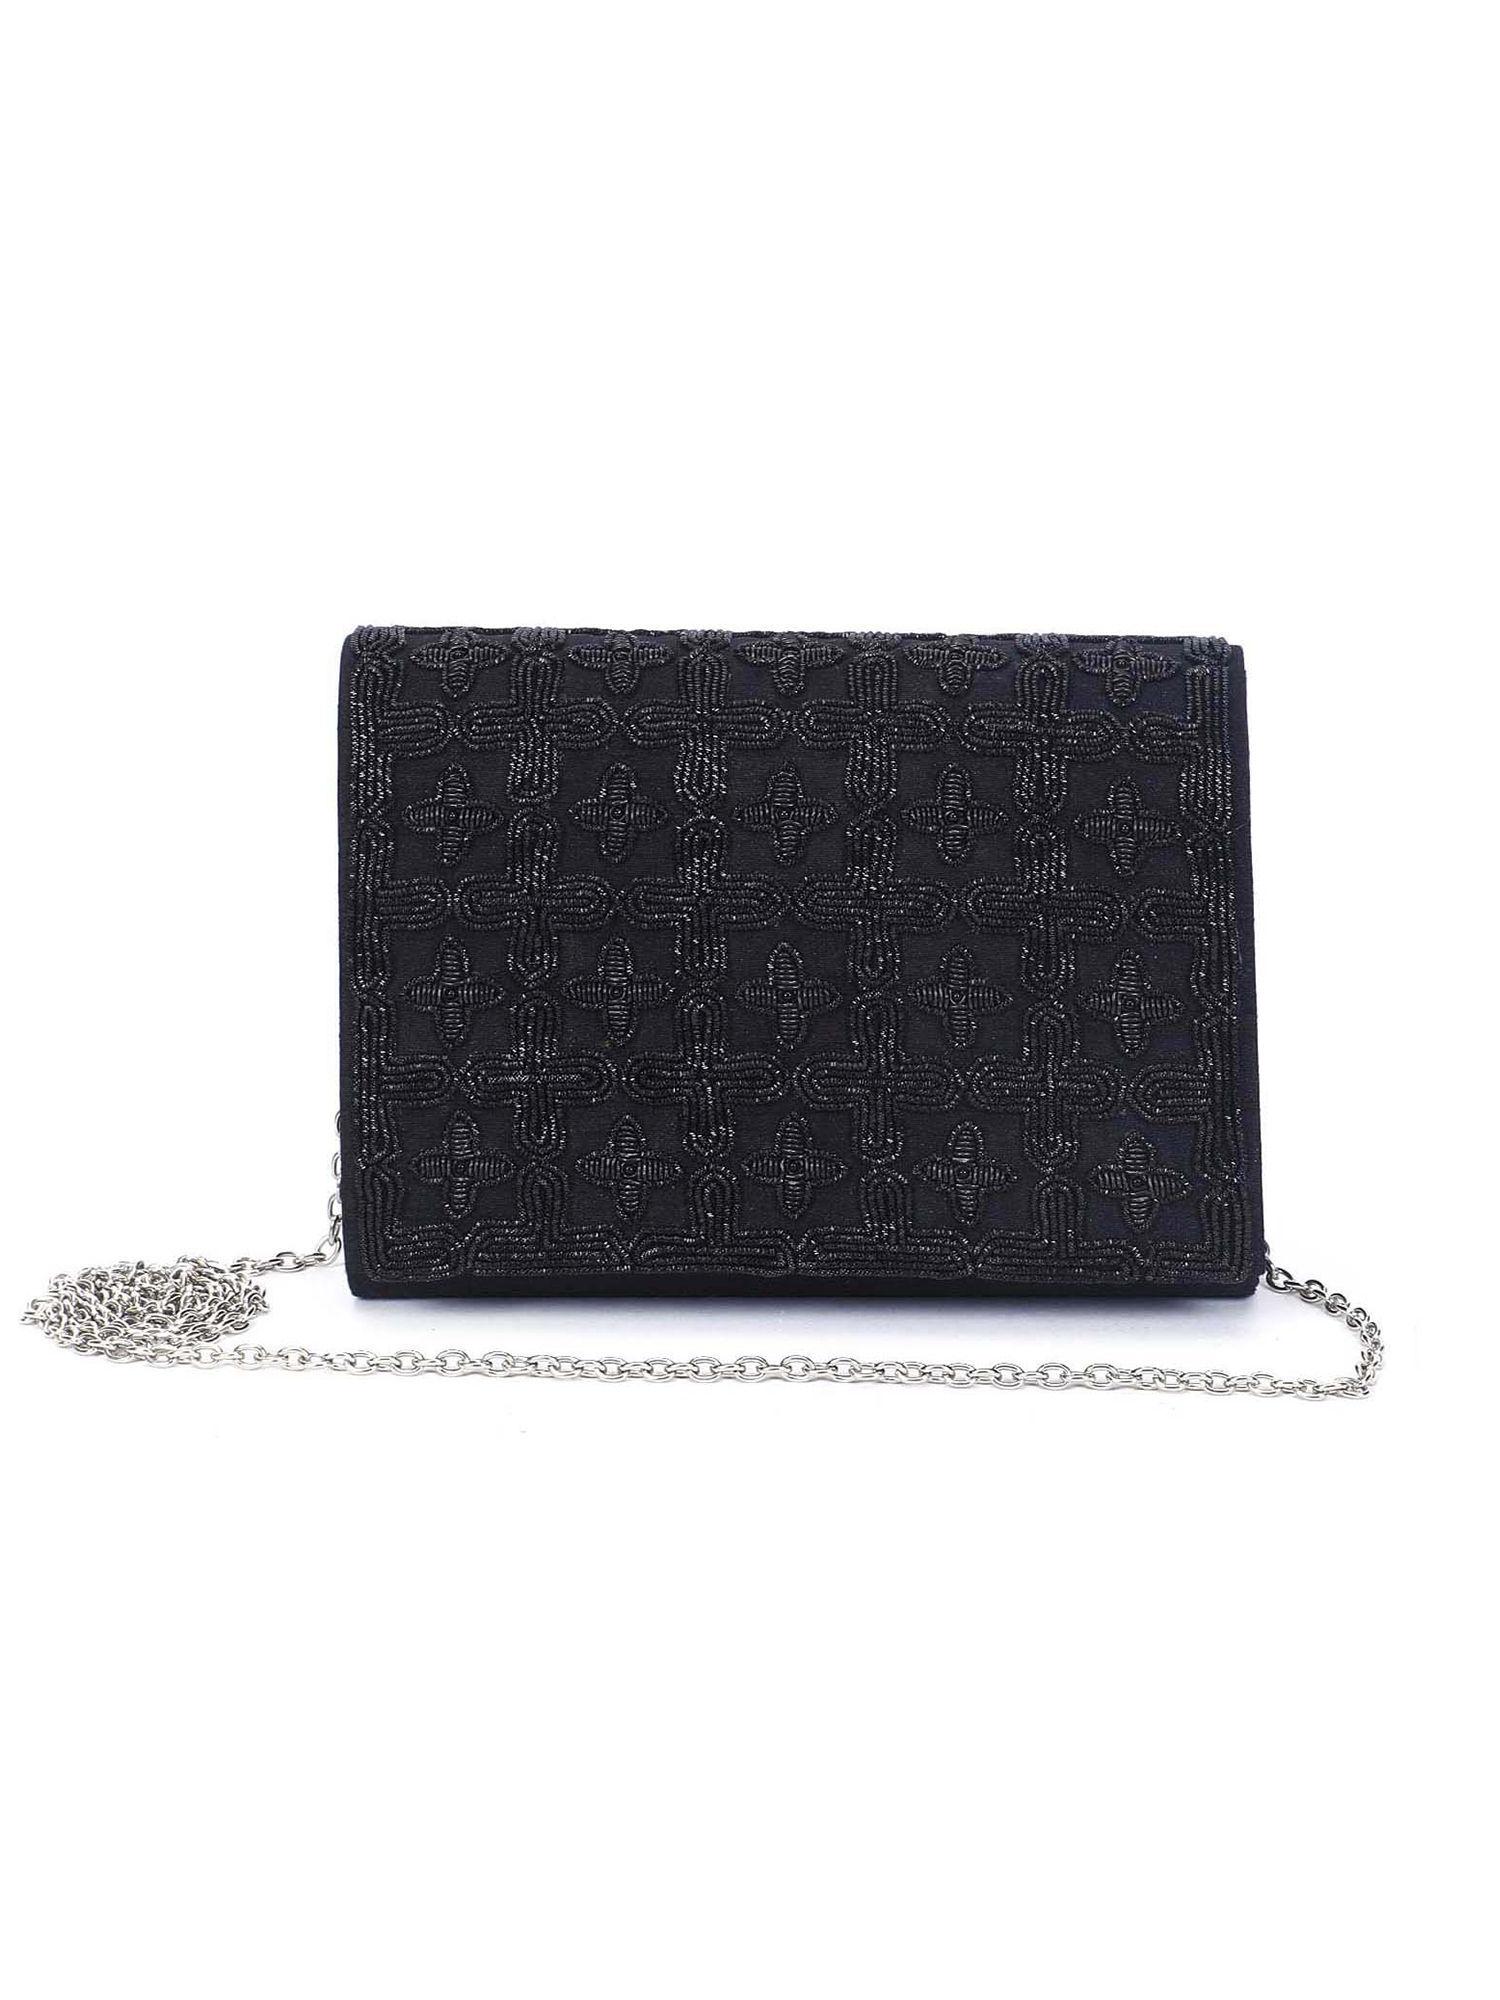 black embroidered sling bag